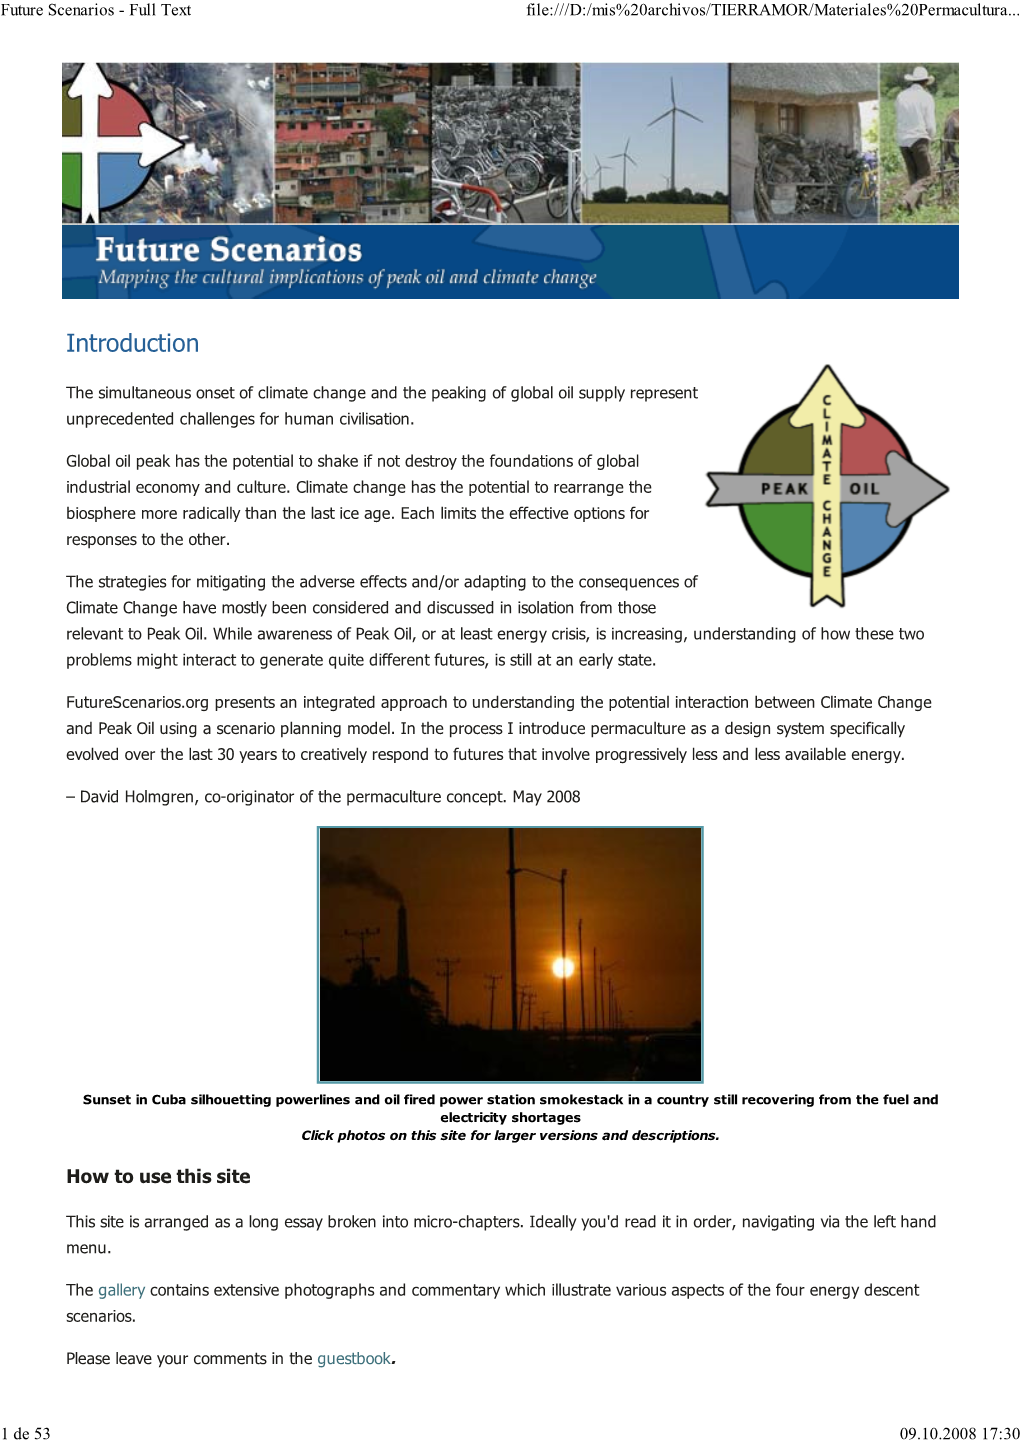 Future Scenarios - Full Text File:///D:/Mis%20Archivos/TIERRAMOR/Materiales%20Permacultura